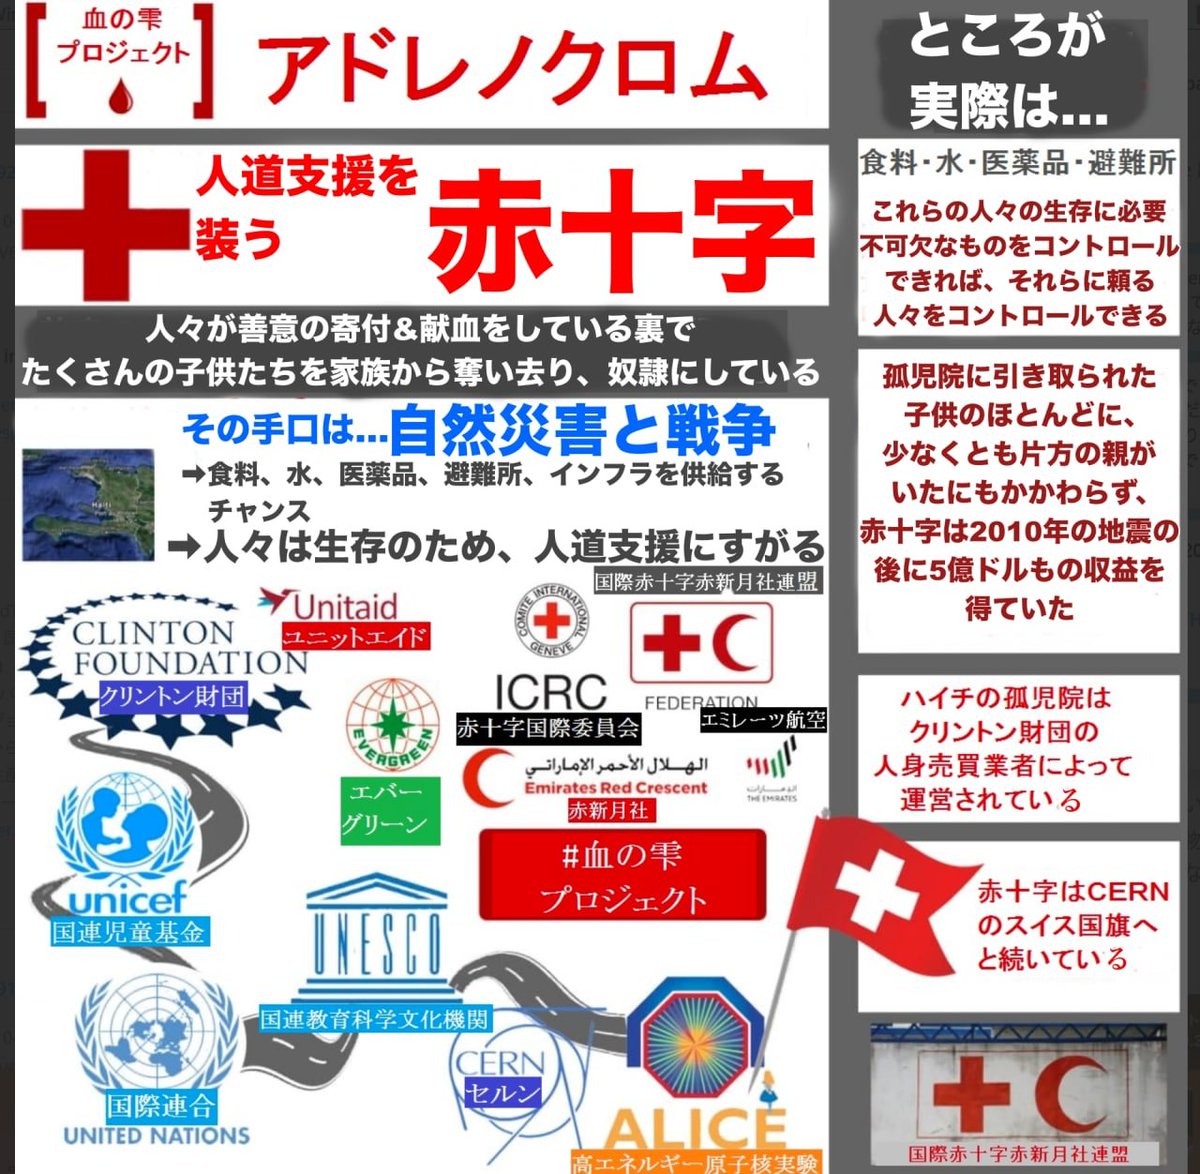 血をタダで吸い上げて、売り付けて儲ける日本ドラキュラ社😈💉😱

#日本赤十字社
#赤十字